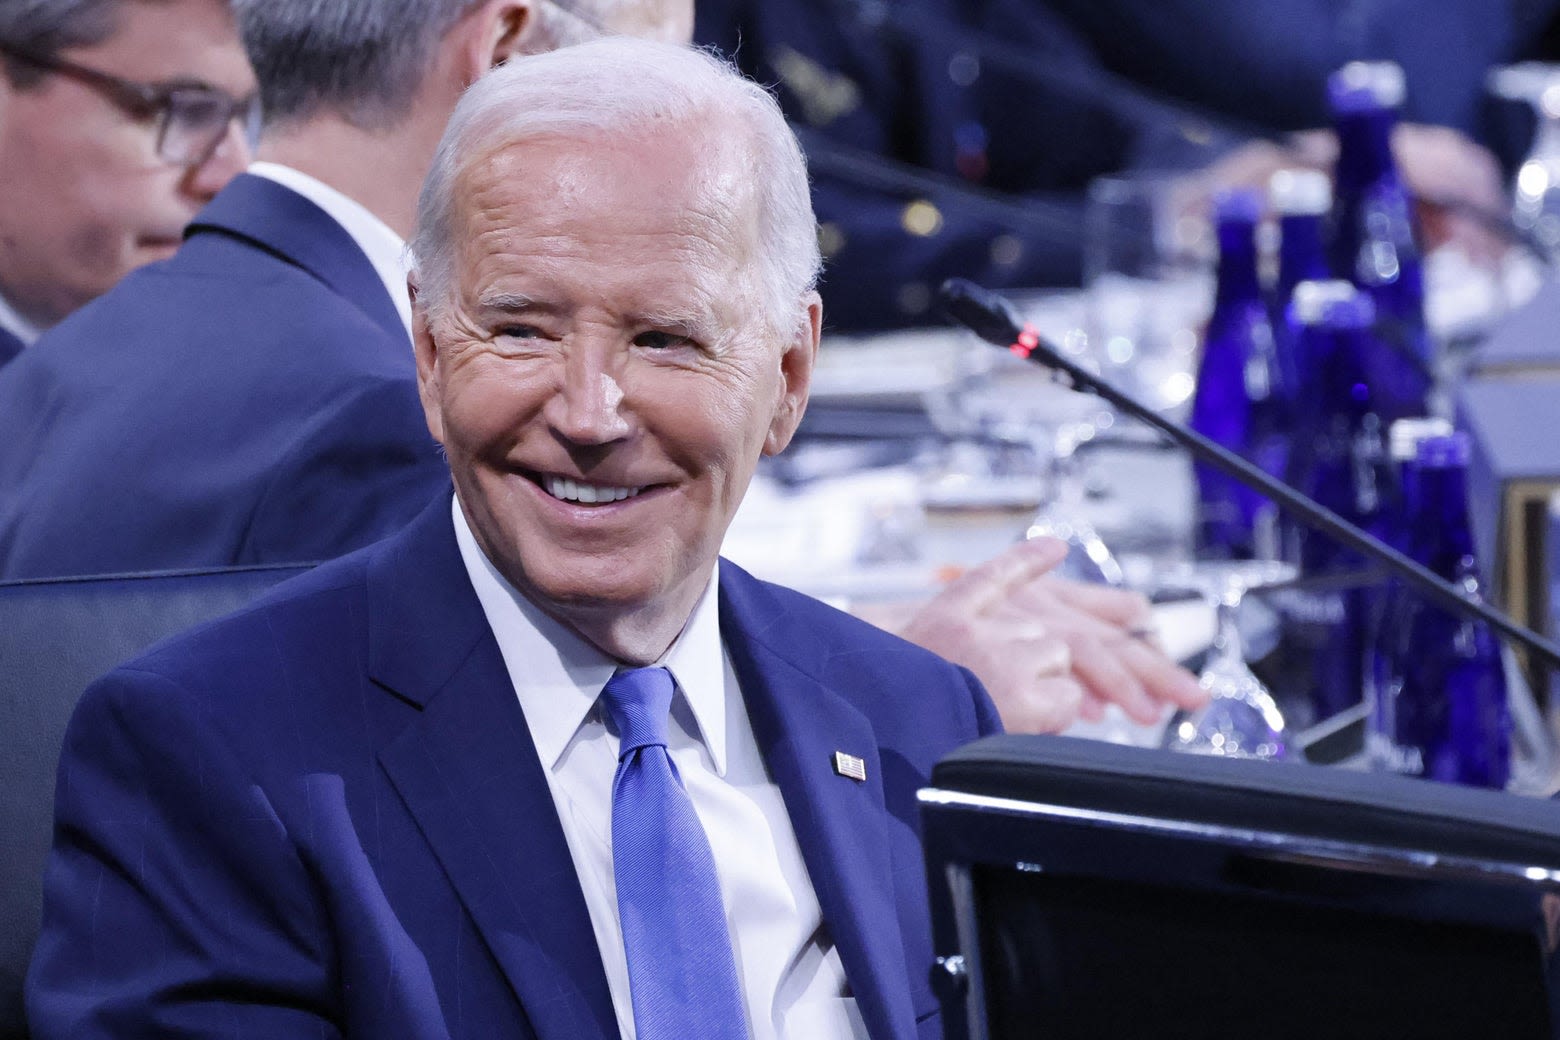 Should Joe Biden Stay in The Presidential Race or Go?